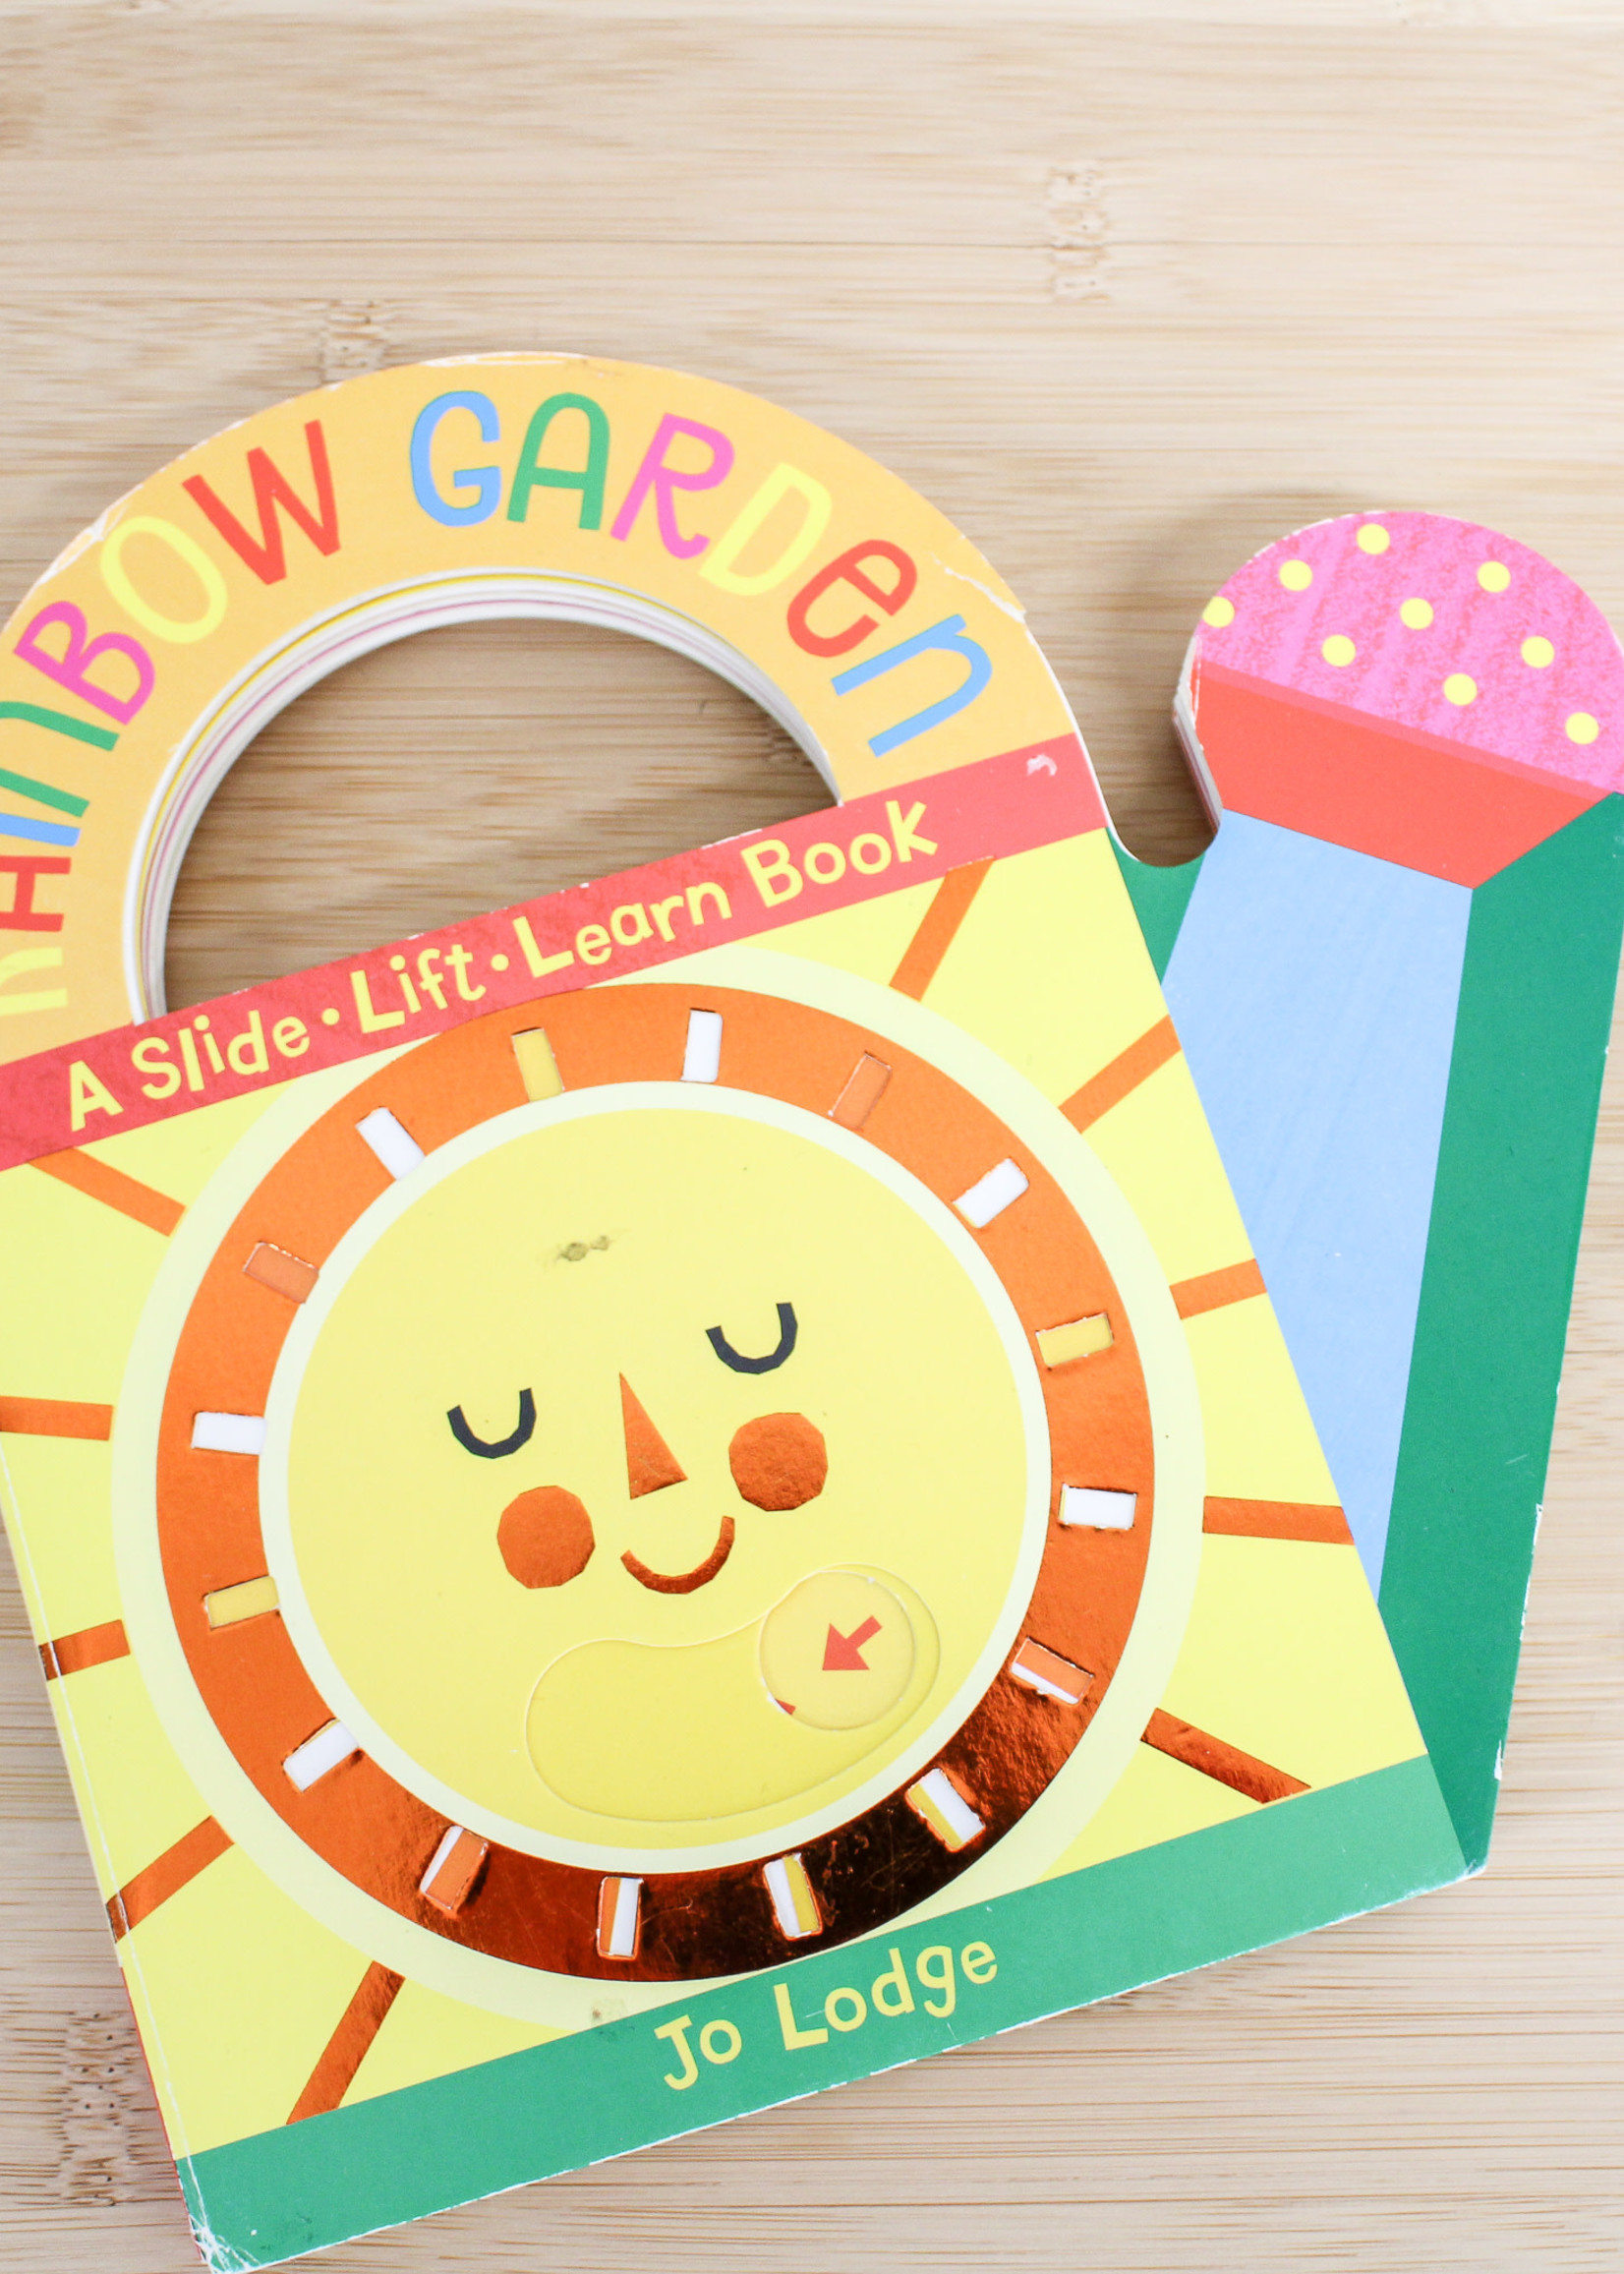 BOOK- KIDS -Rainbow Garden, A Slide + Lift + Learn Book